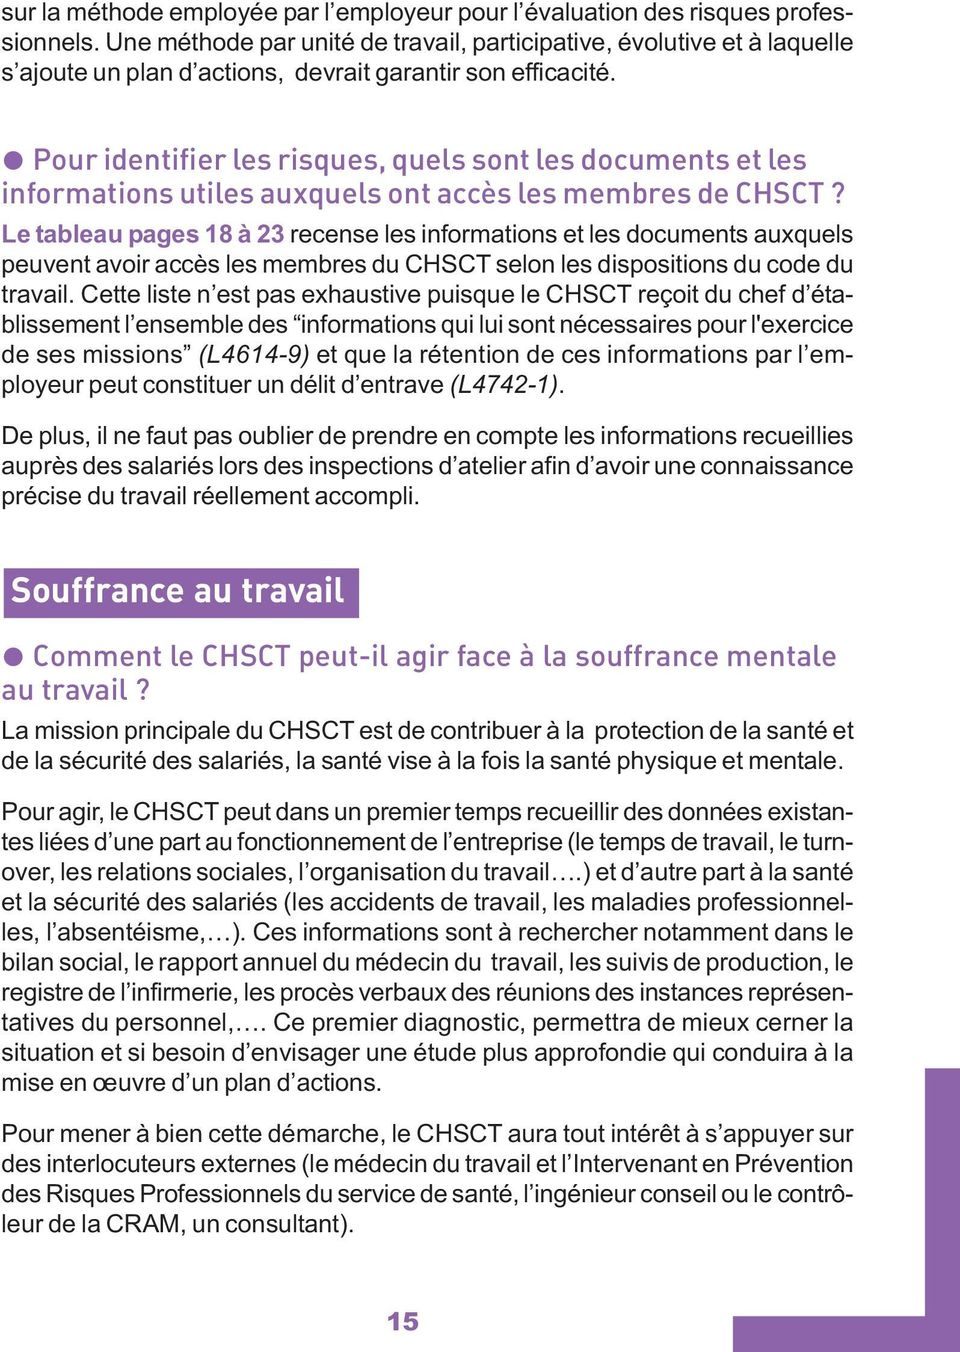 Pour identifier les risques, quels sont les documents et les informations utiles auxquels ont accès les membres de CHSCT?